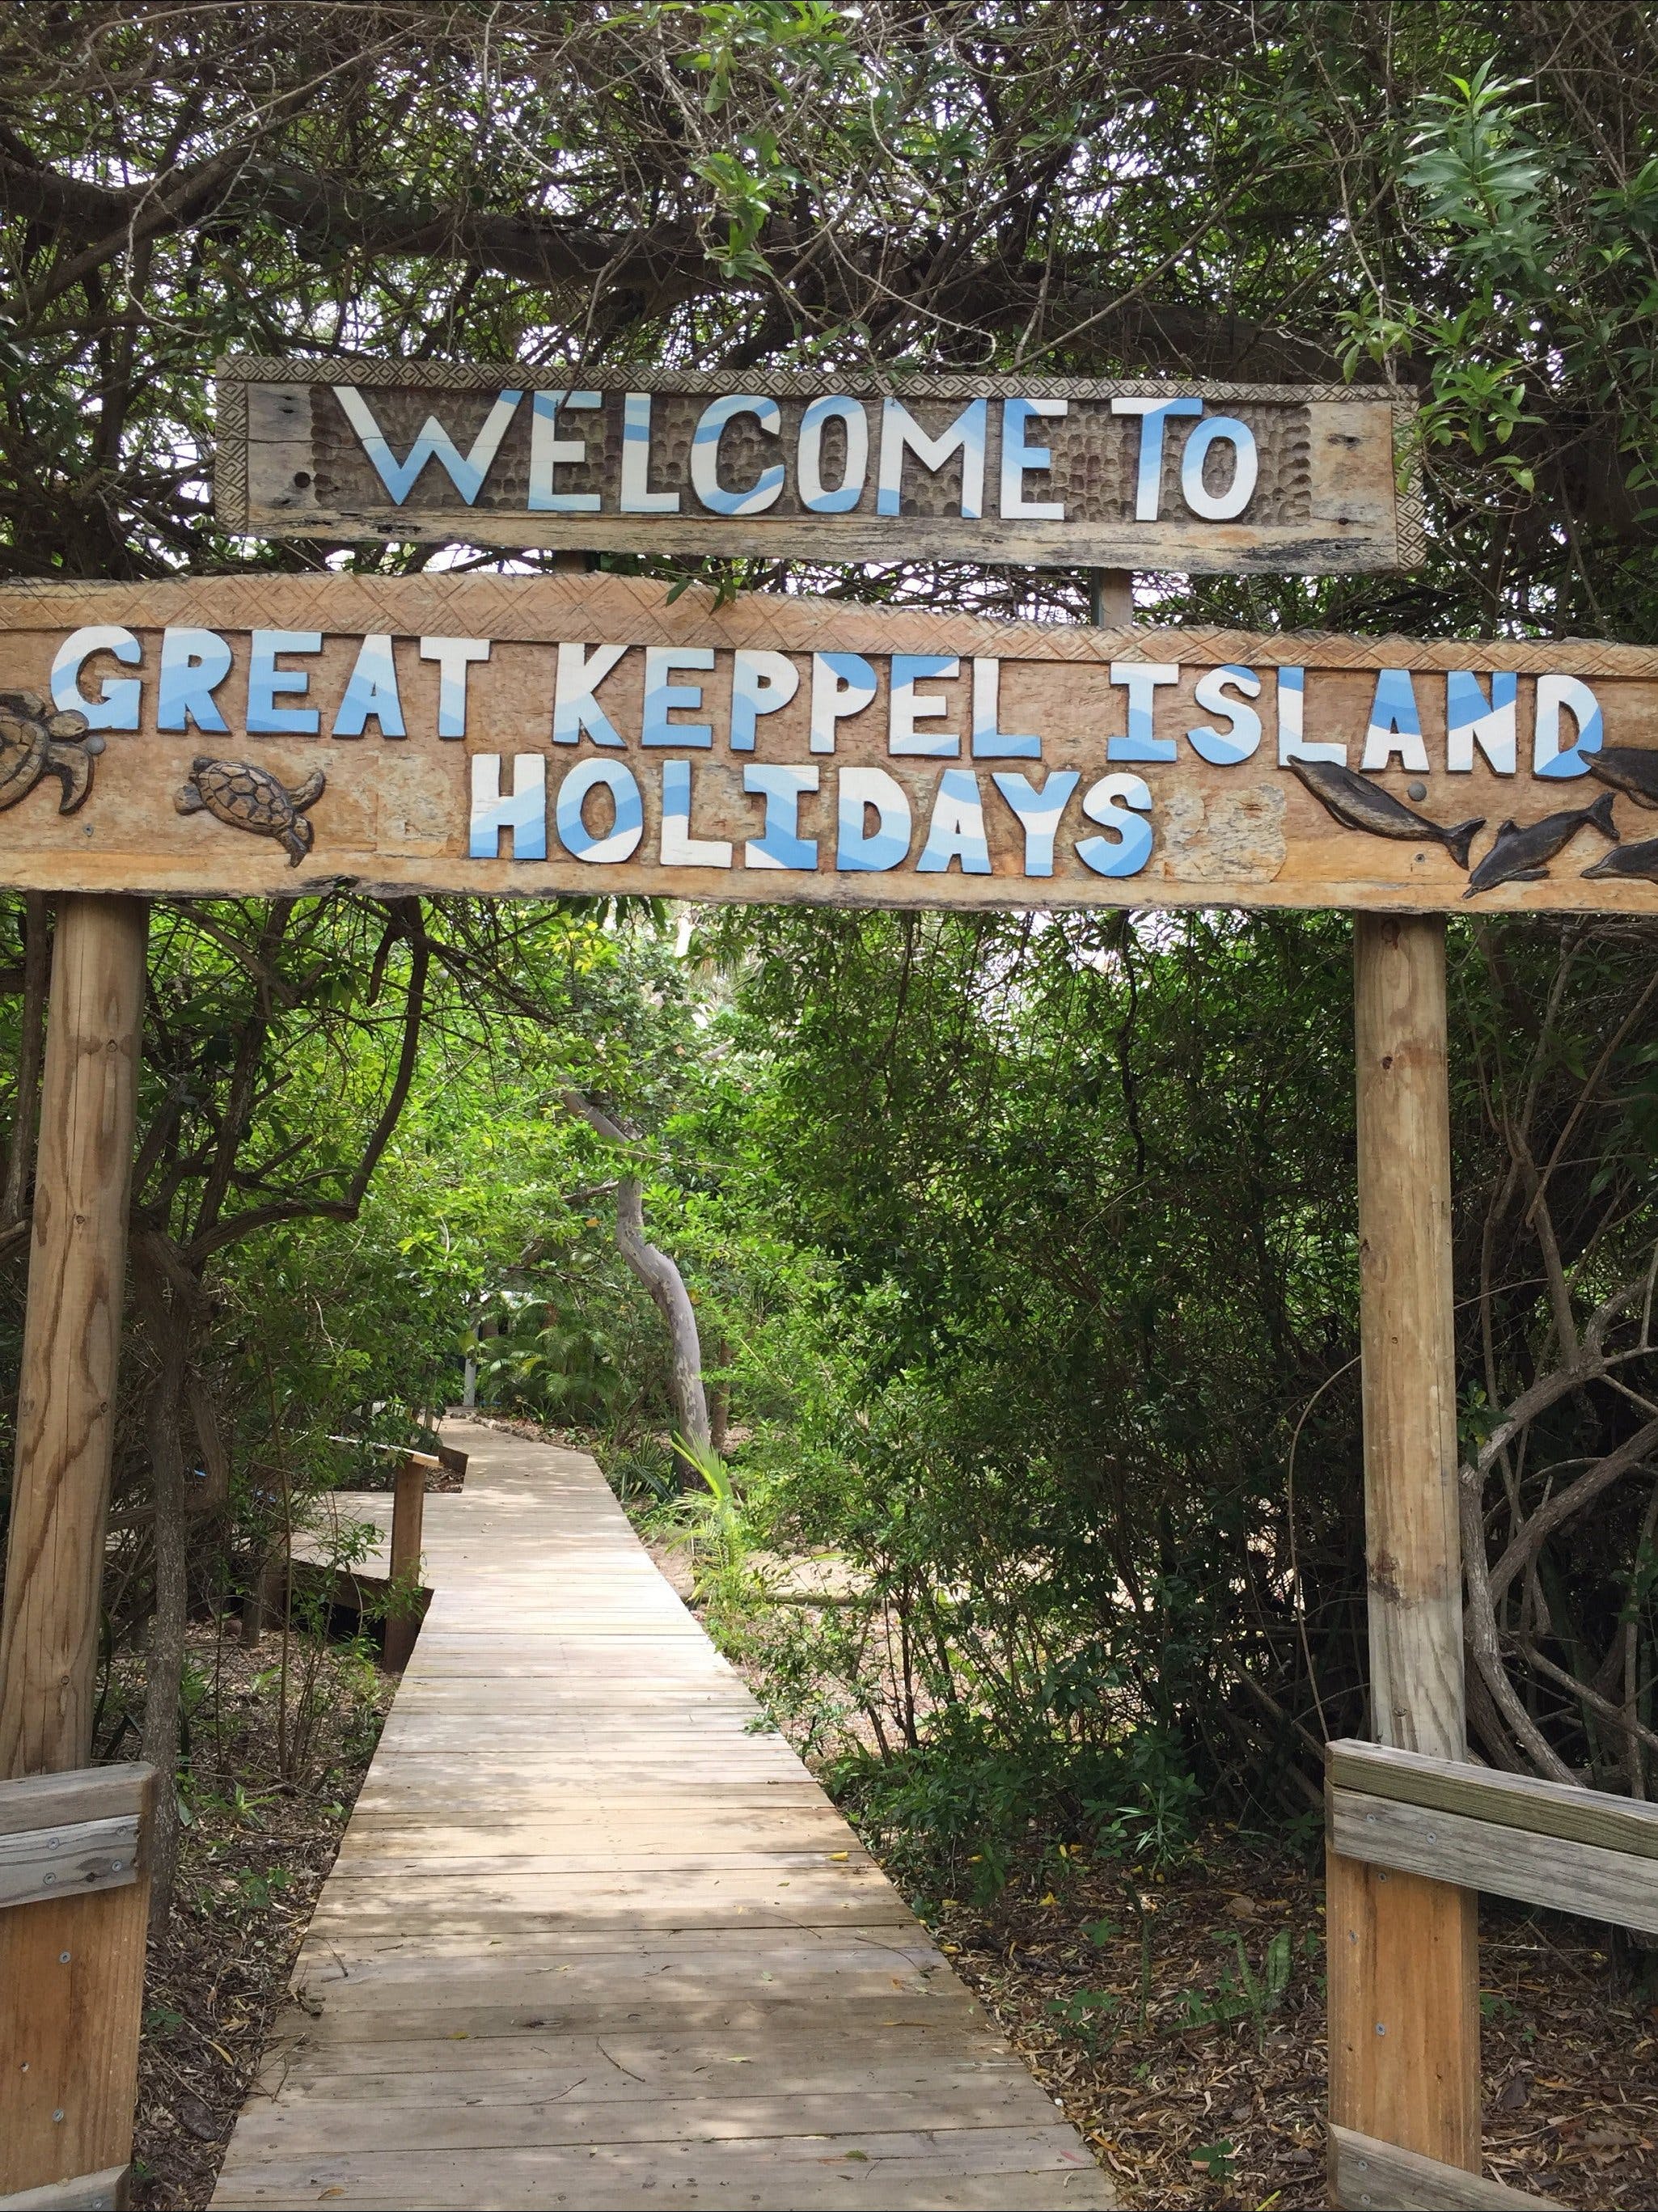 Great Keppel Island Holiday Village - Accommodation Sunshine Coast